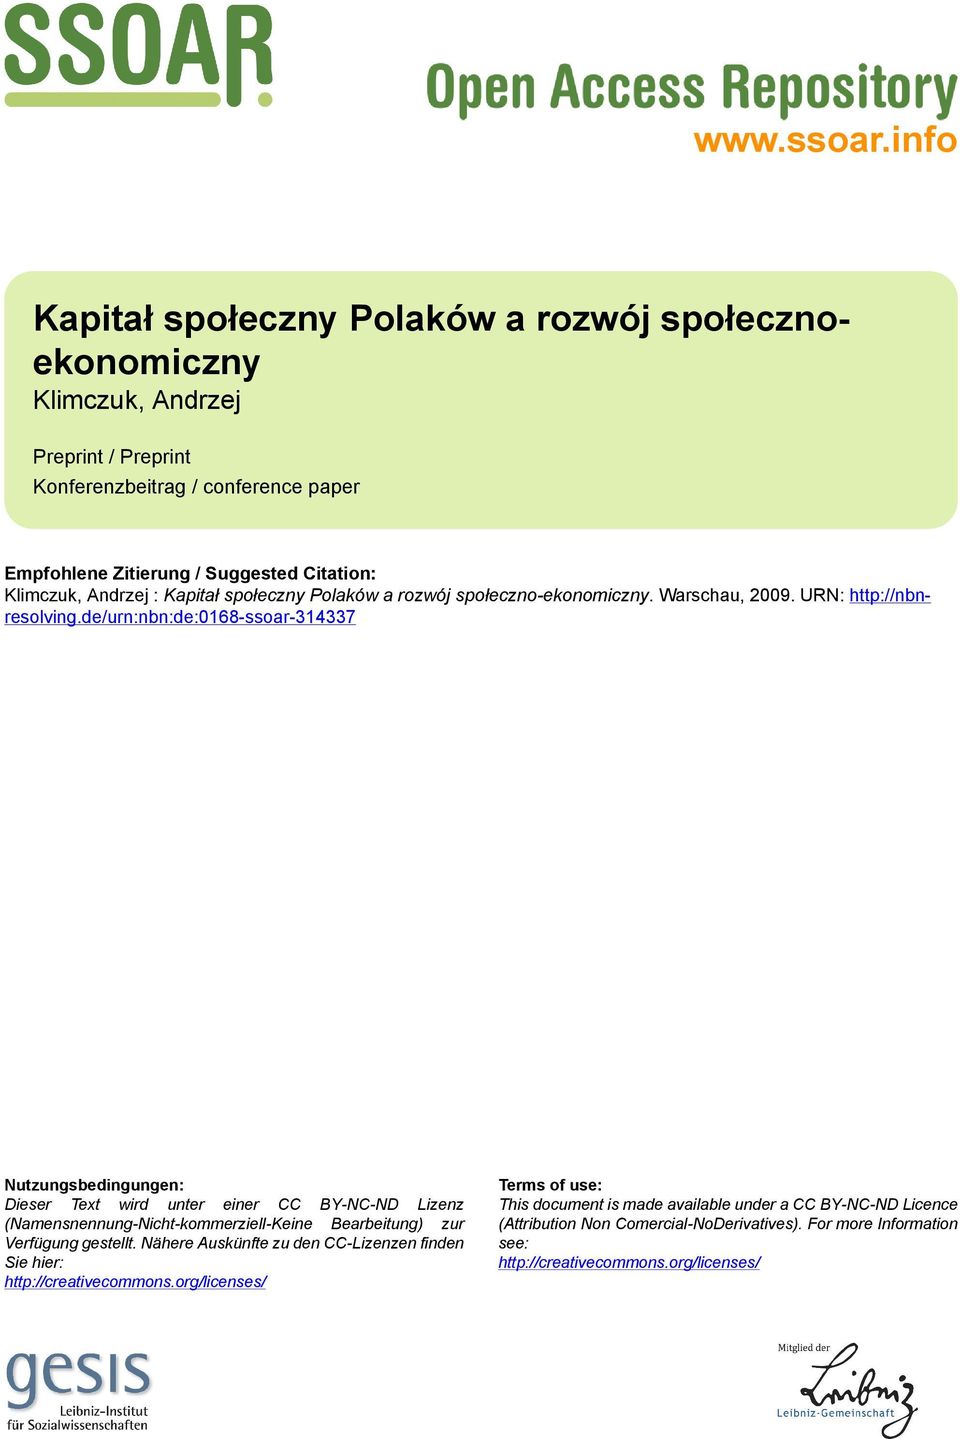 Andrzej : Kapitał społeczny Polaków a rozwój społeczno-ekonomiczny. Warschau, 2009. URN: http://nbnresolving.